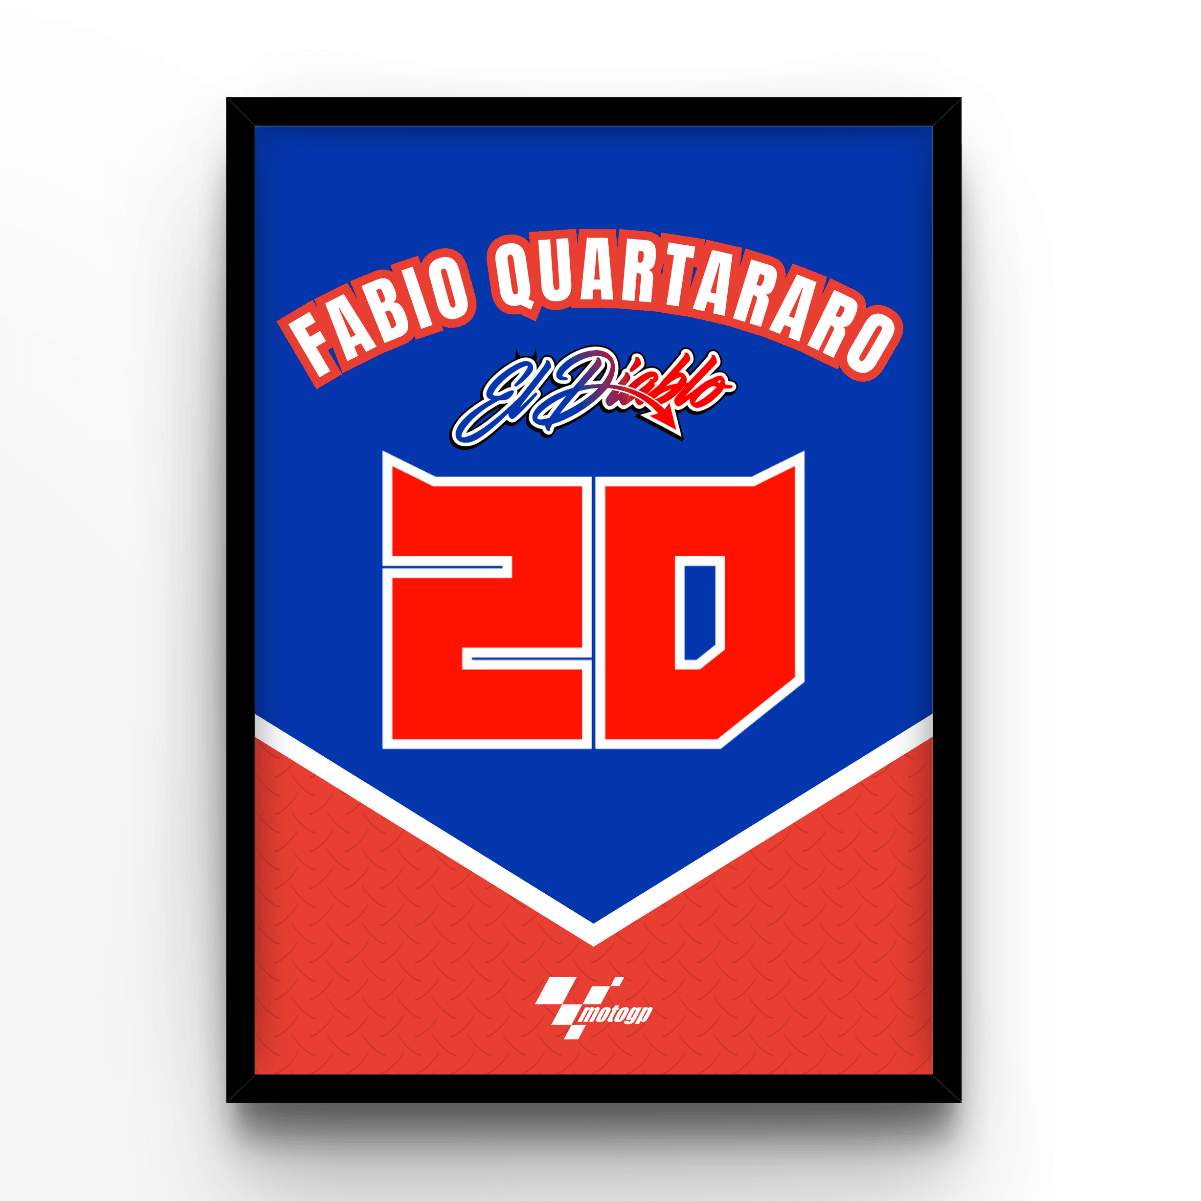 Fabio Quartararo - A4, A3, A2 Posters Base - Poster Print Shop / Art Prints / PostersBase